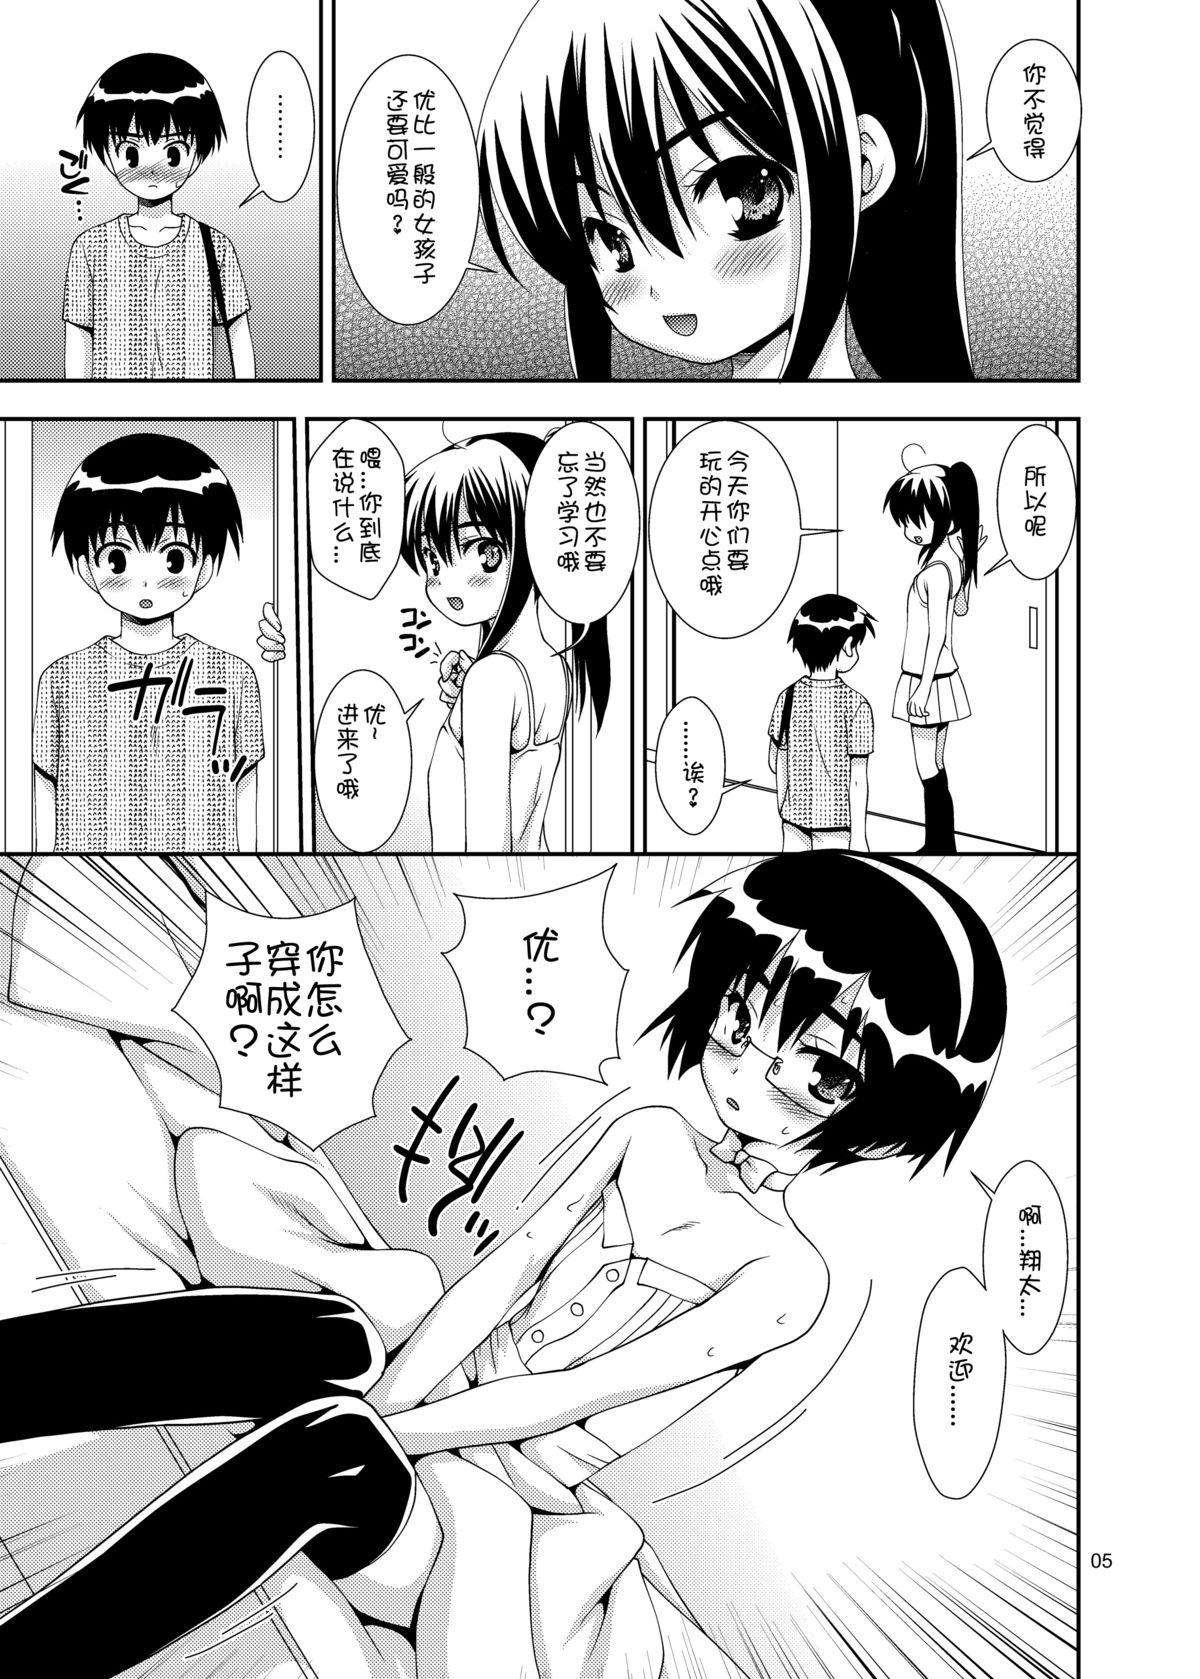 Older Osananajimi "Otokonoko-ka" Keikaku Erotica - Page 4